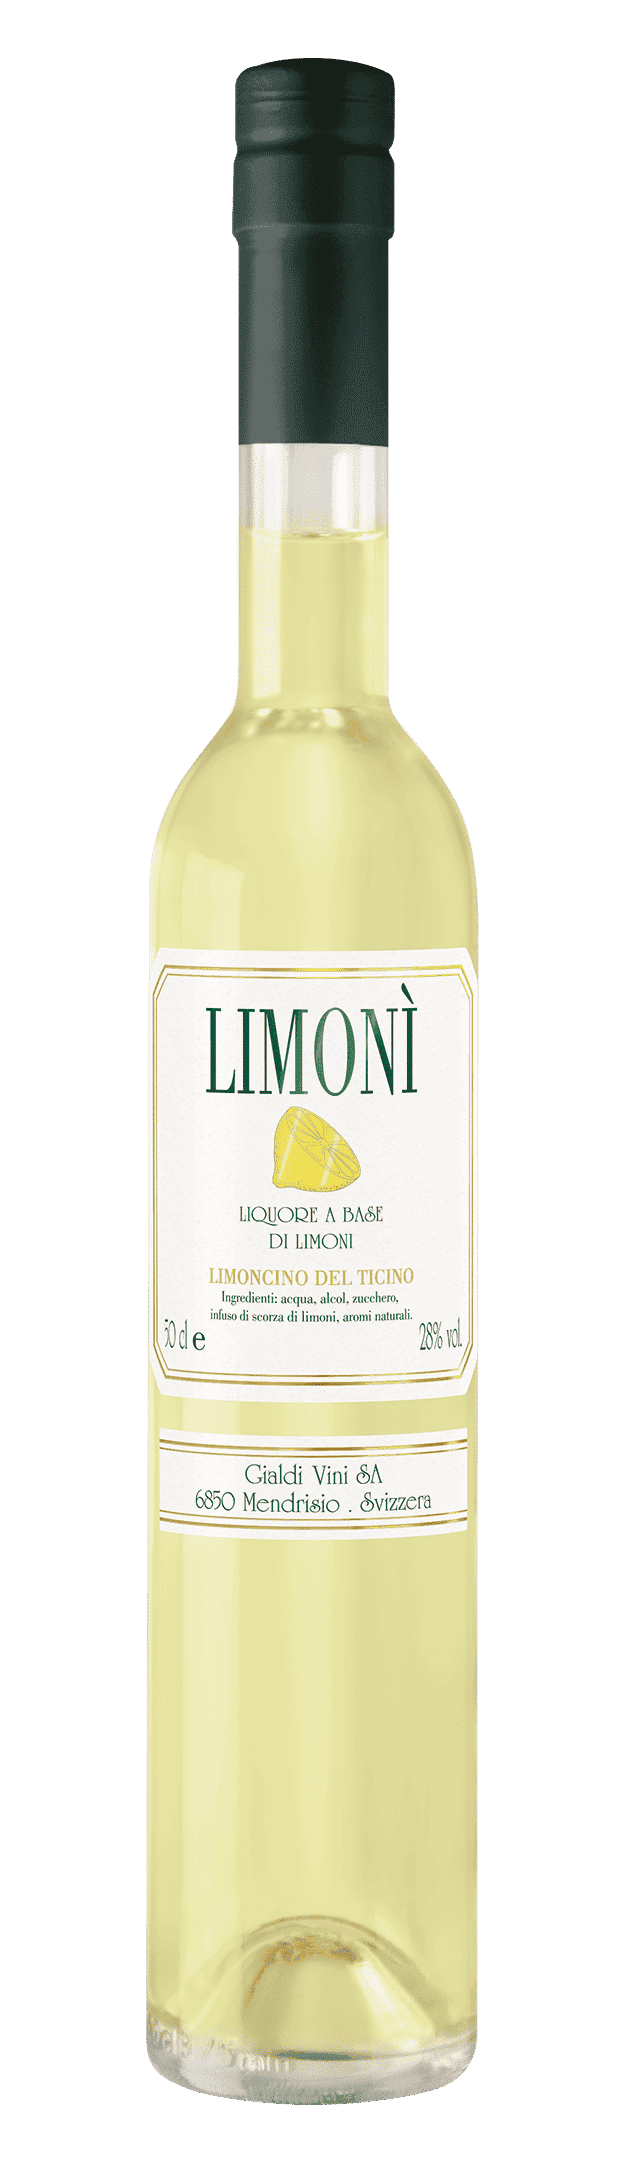 Liquore Limonì - Brivio